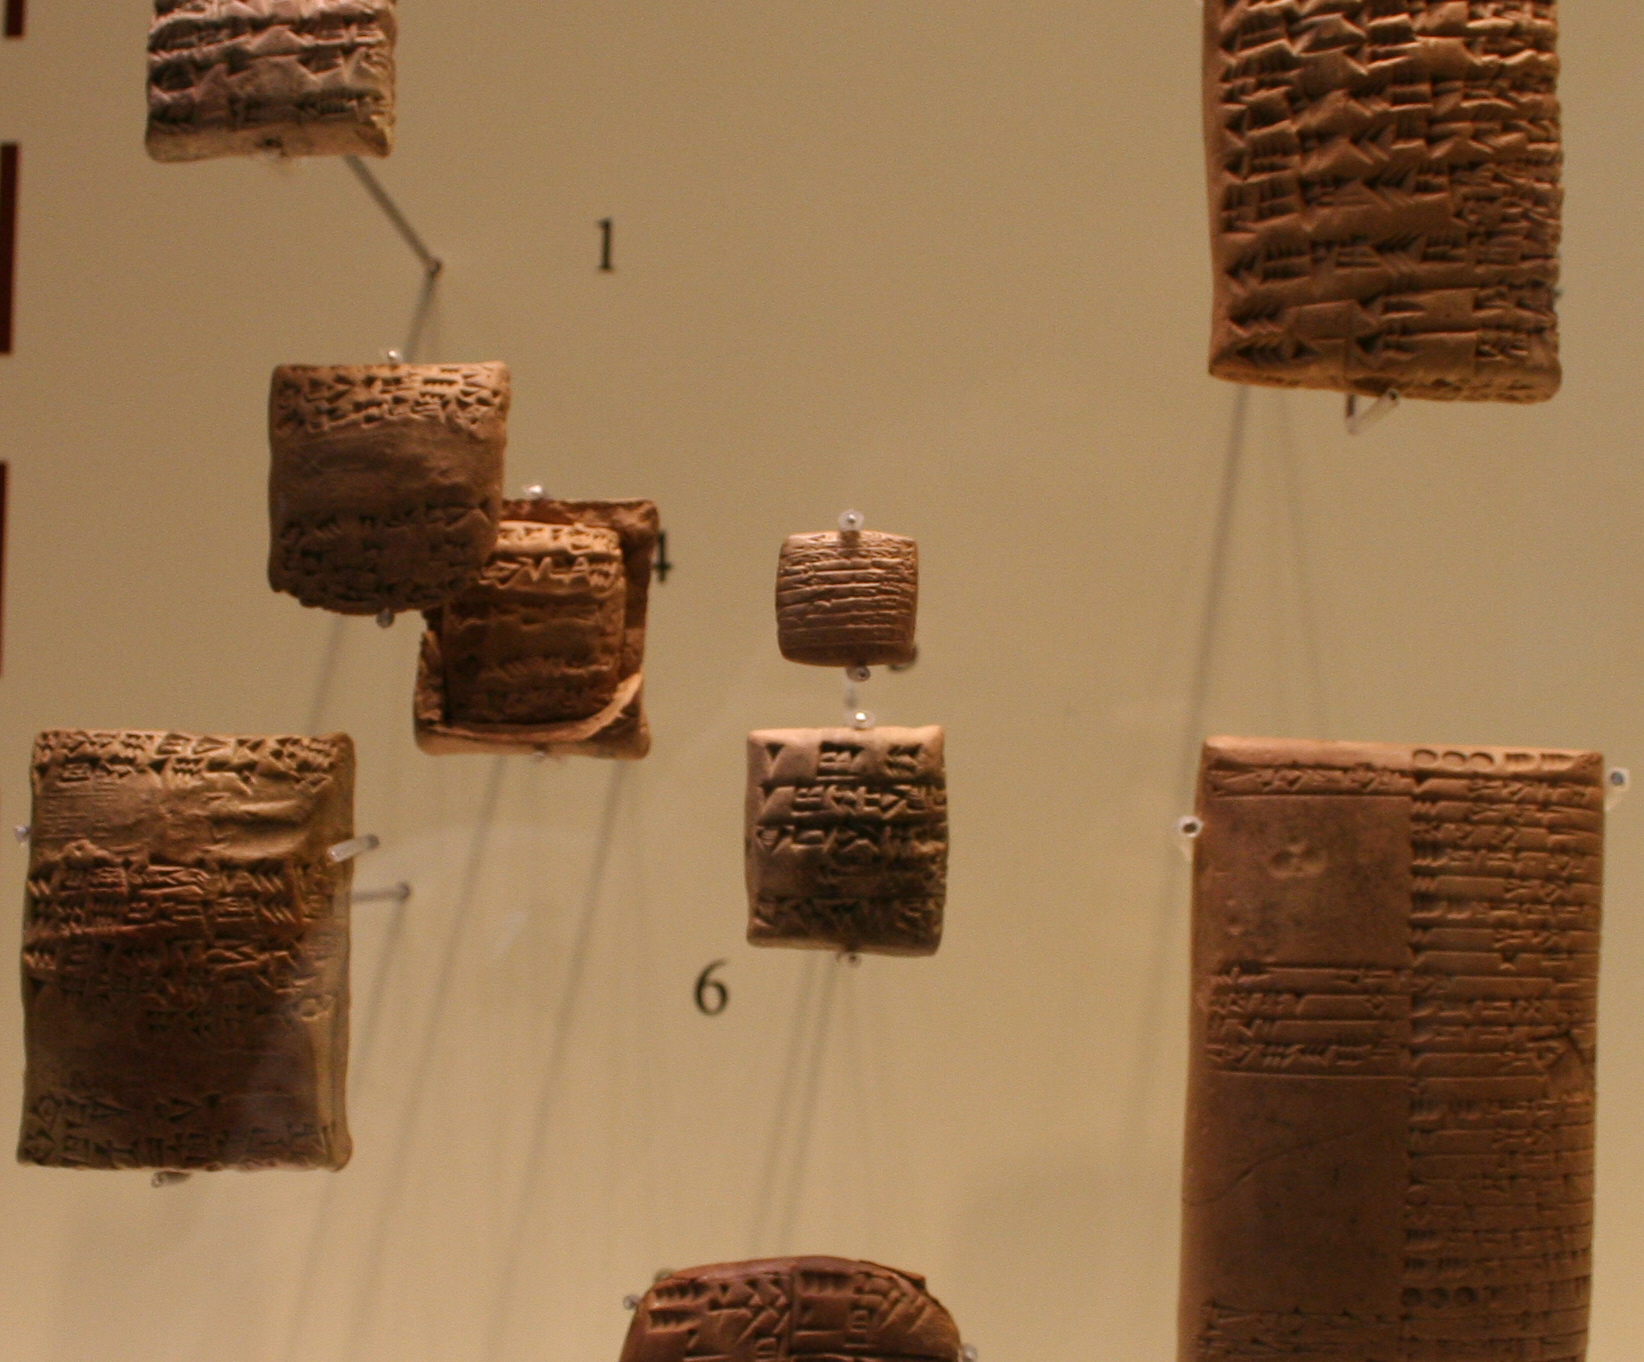 Tablettes d'argile de taille, format et mise en page variés, Ägyptisches Museu de Leipzig. Einsamer Schütze  (CC BY-SA 3.0)